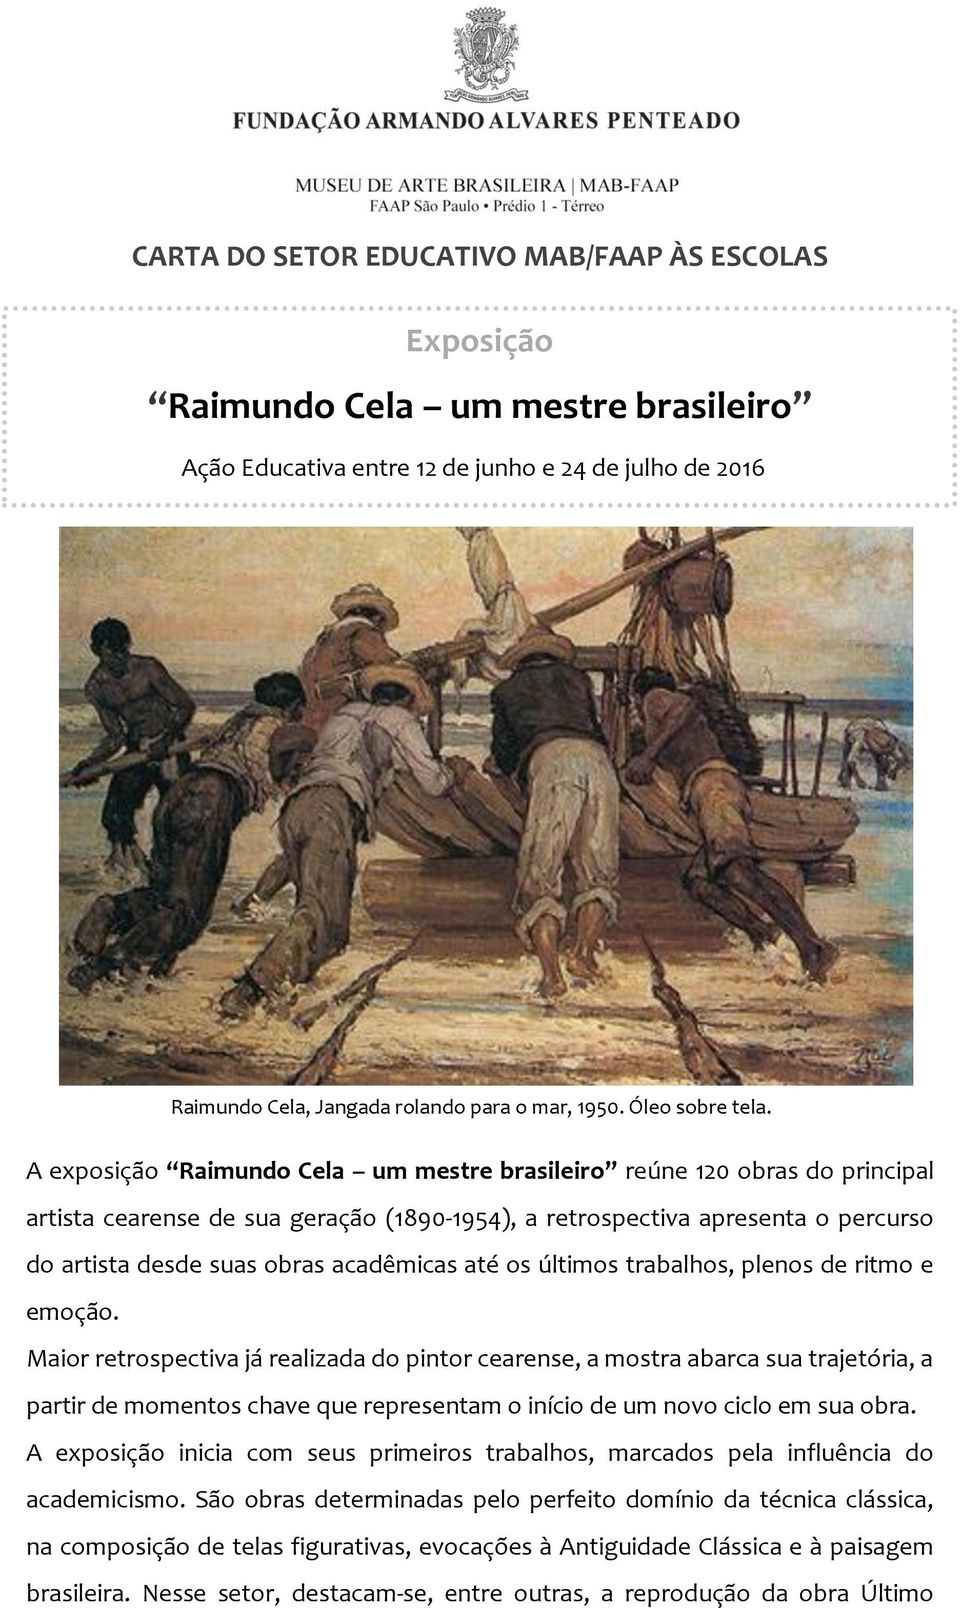 A exposição Raimundo Cela um mestre brasileiro reúne 120 obras do principal artista cearense de sua geração (1890-1954), a retrospectiva apresenta o percurso do artista desde suas obras acadêmicas